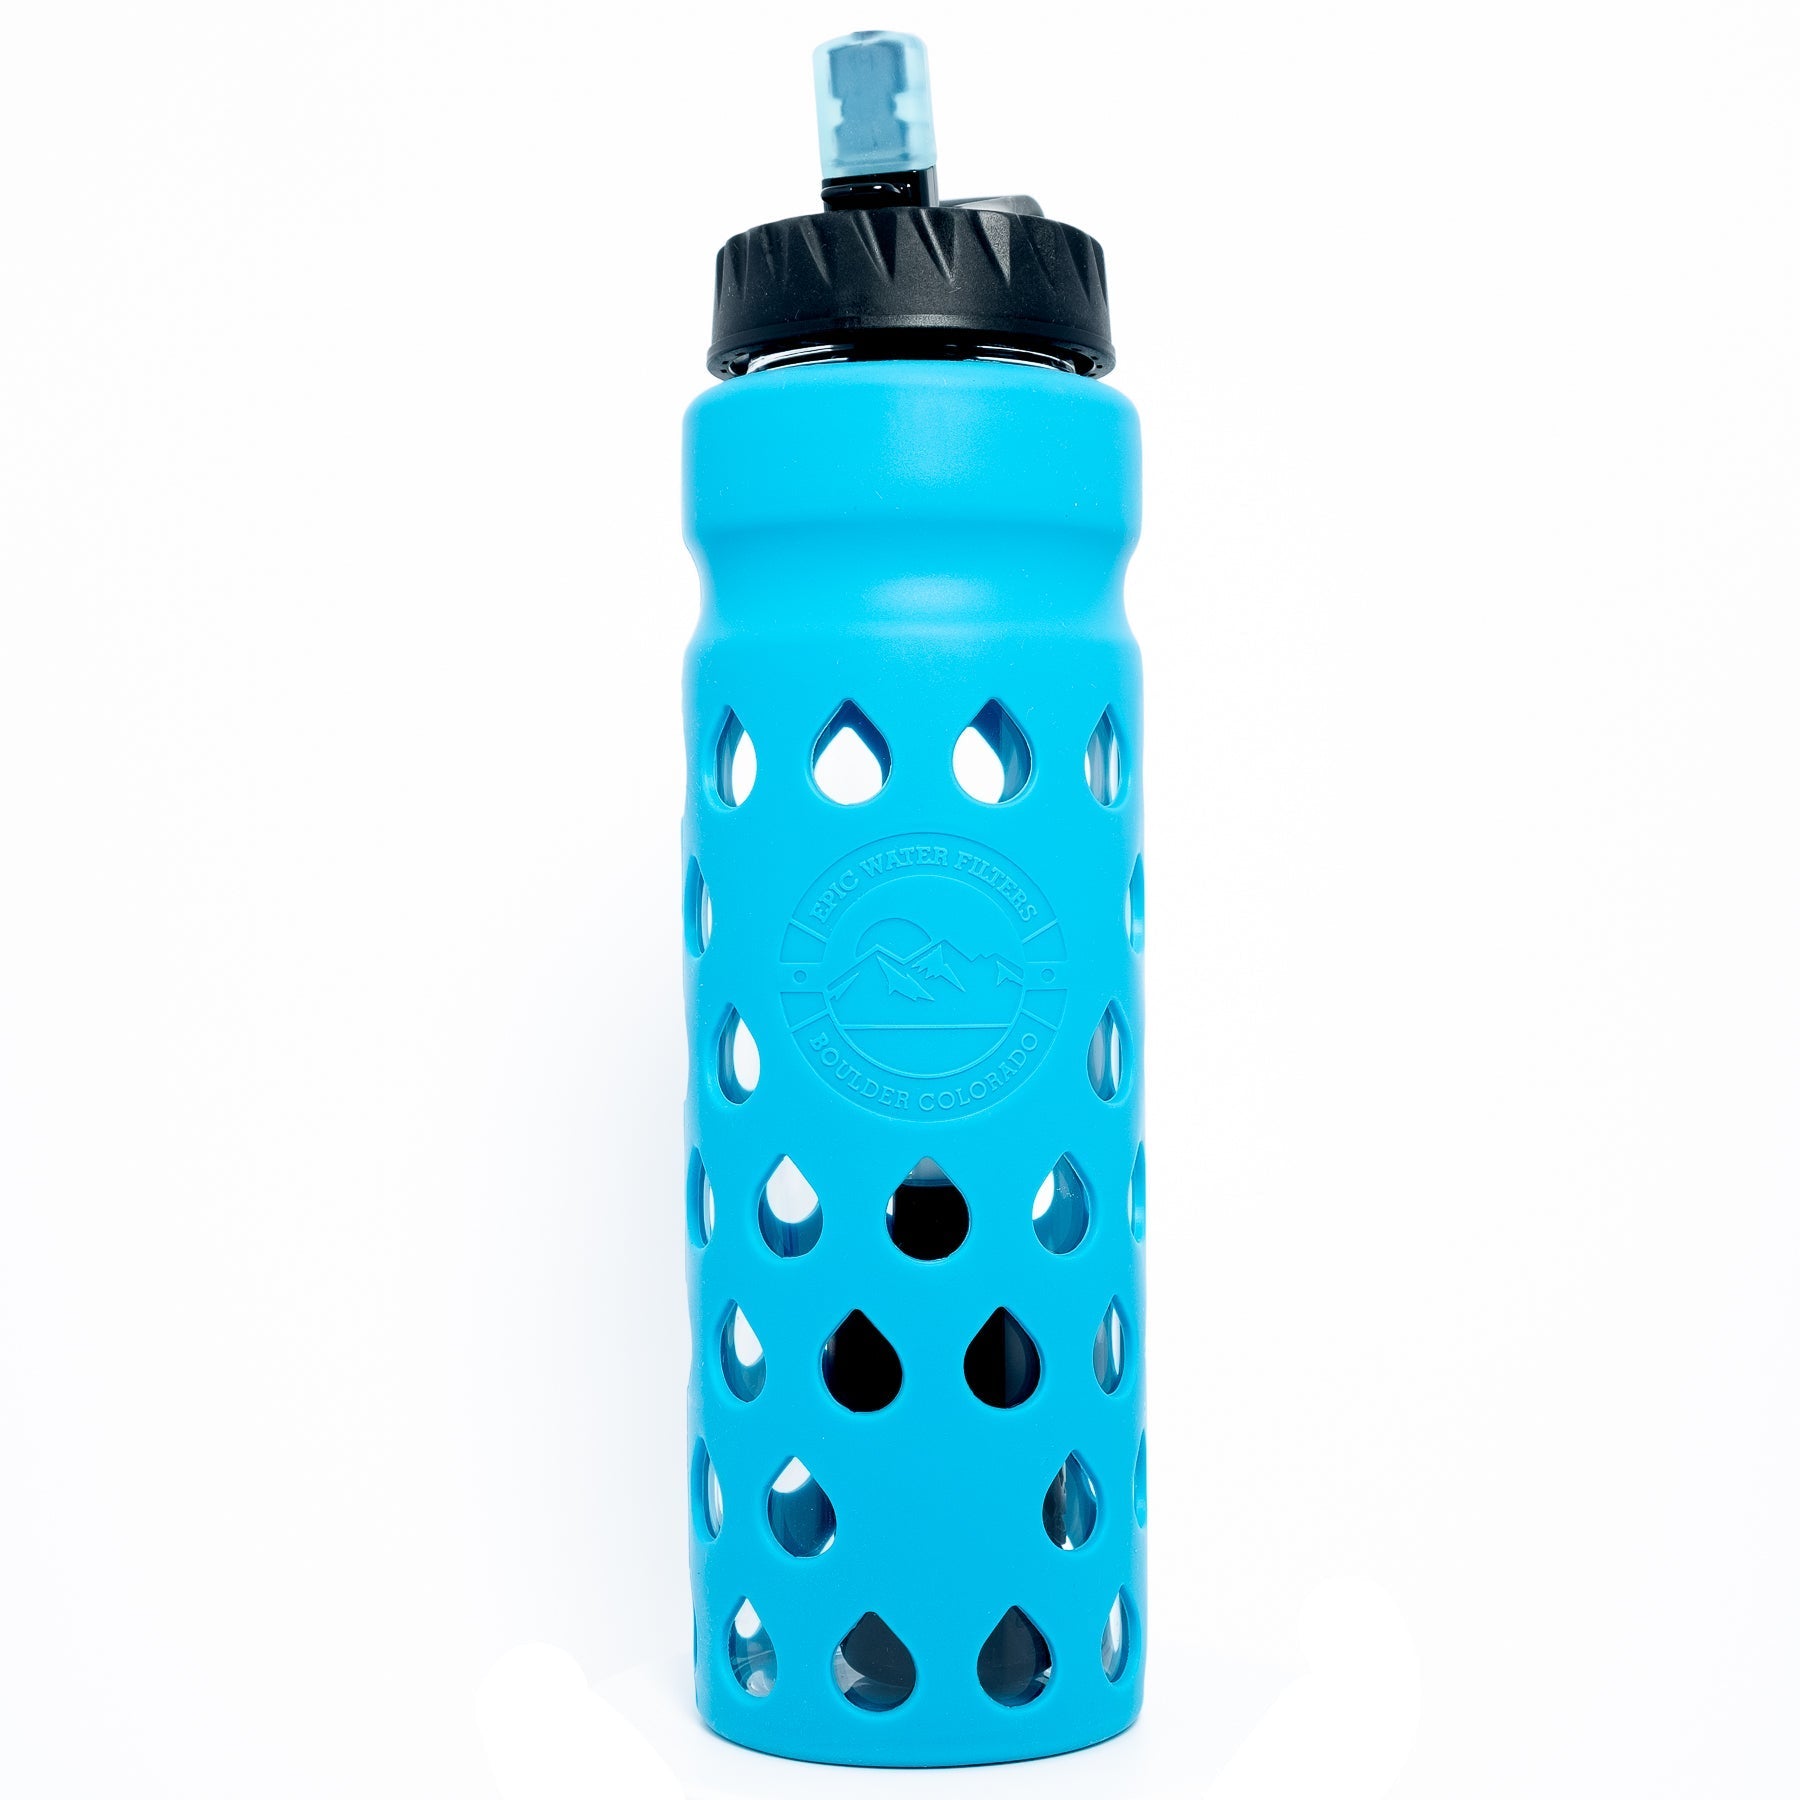 Blue Epic Escape Glass Bottle with 75 Gallon Filter 32 oz